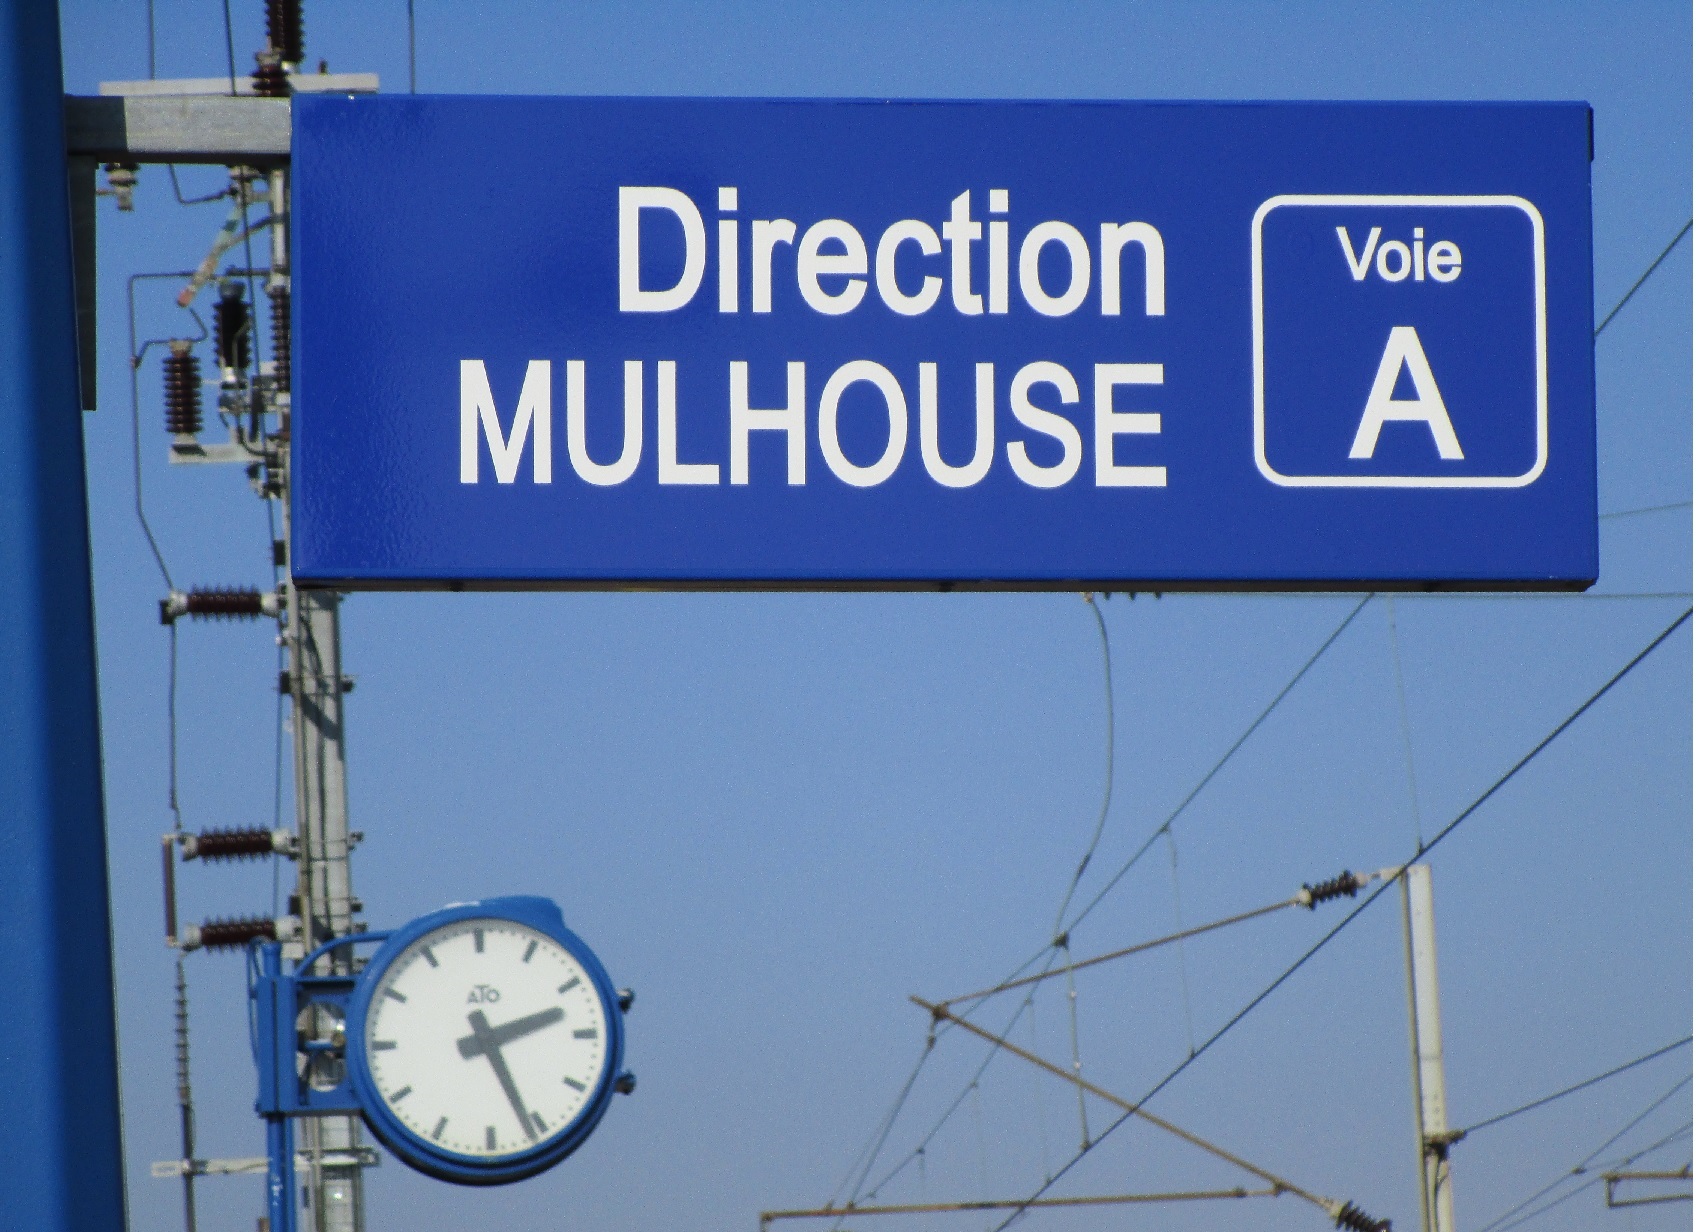 Mulhouse quai Voie A